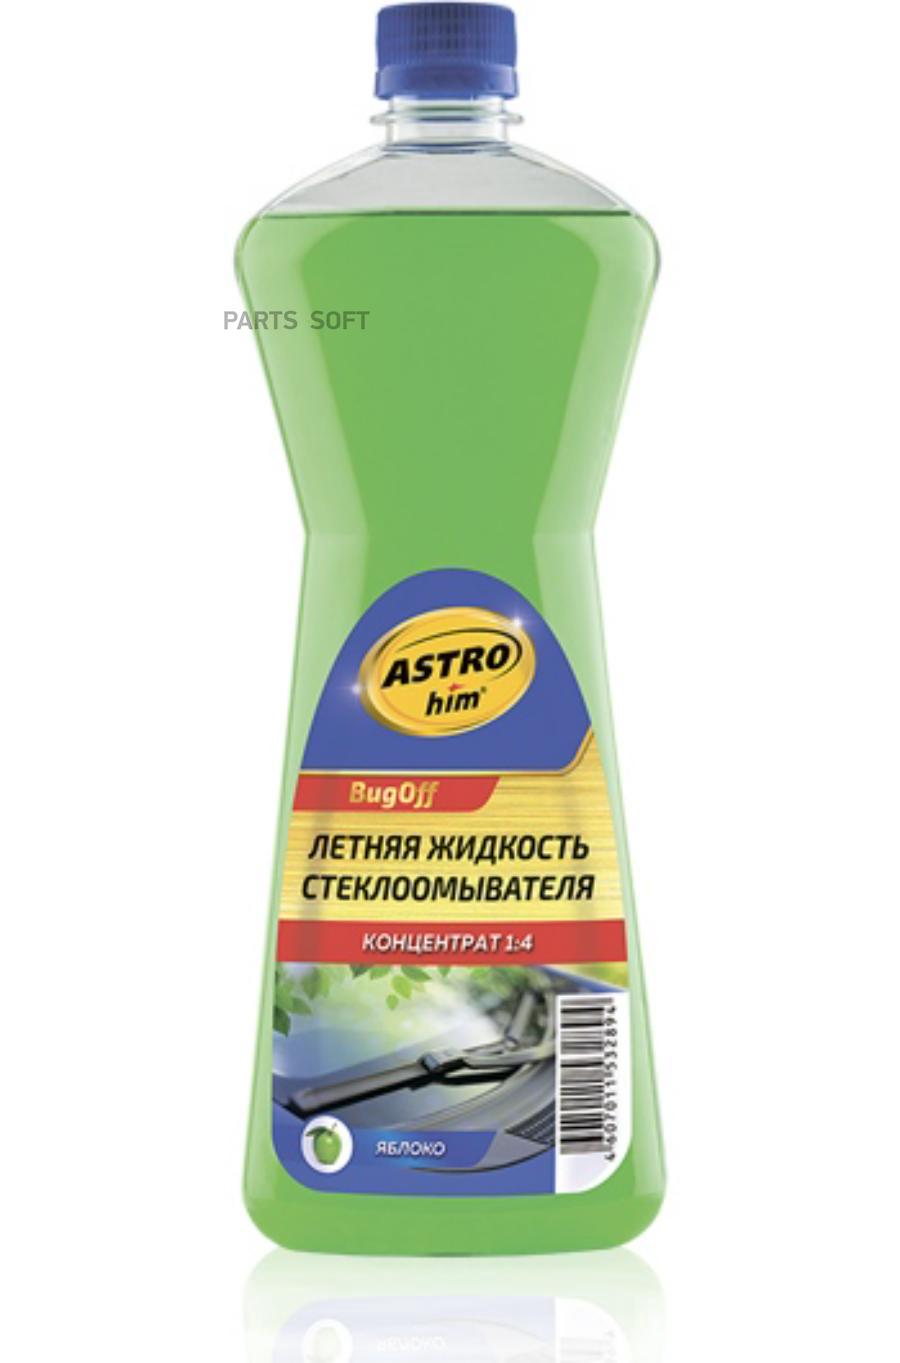 AC420 ASTROHIM Жидкость стеклоомывателя летняя Bugoff концентрат 1:4 , 1л